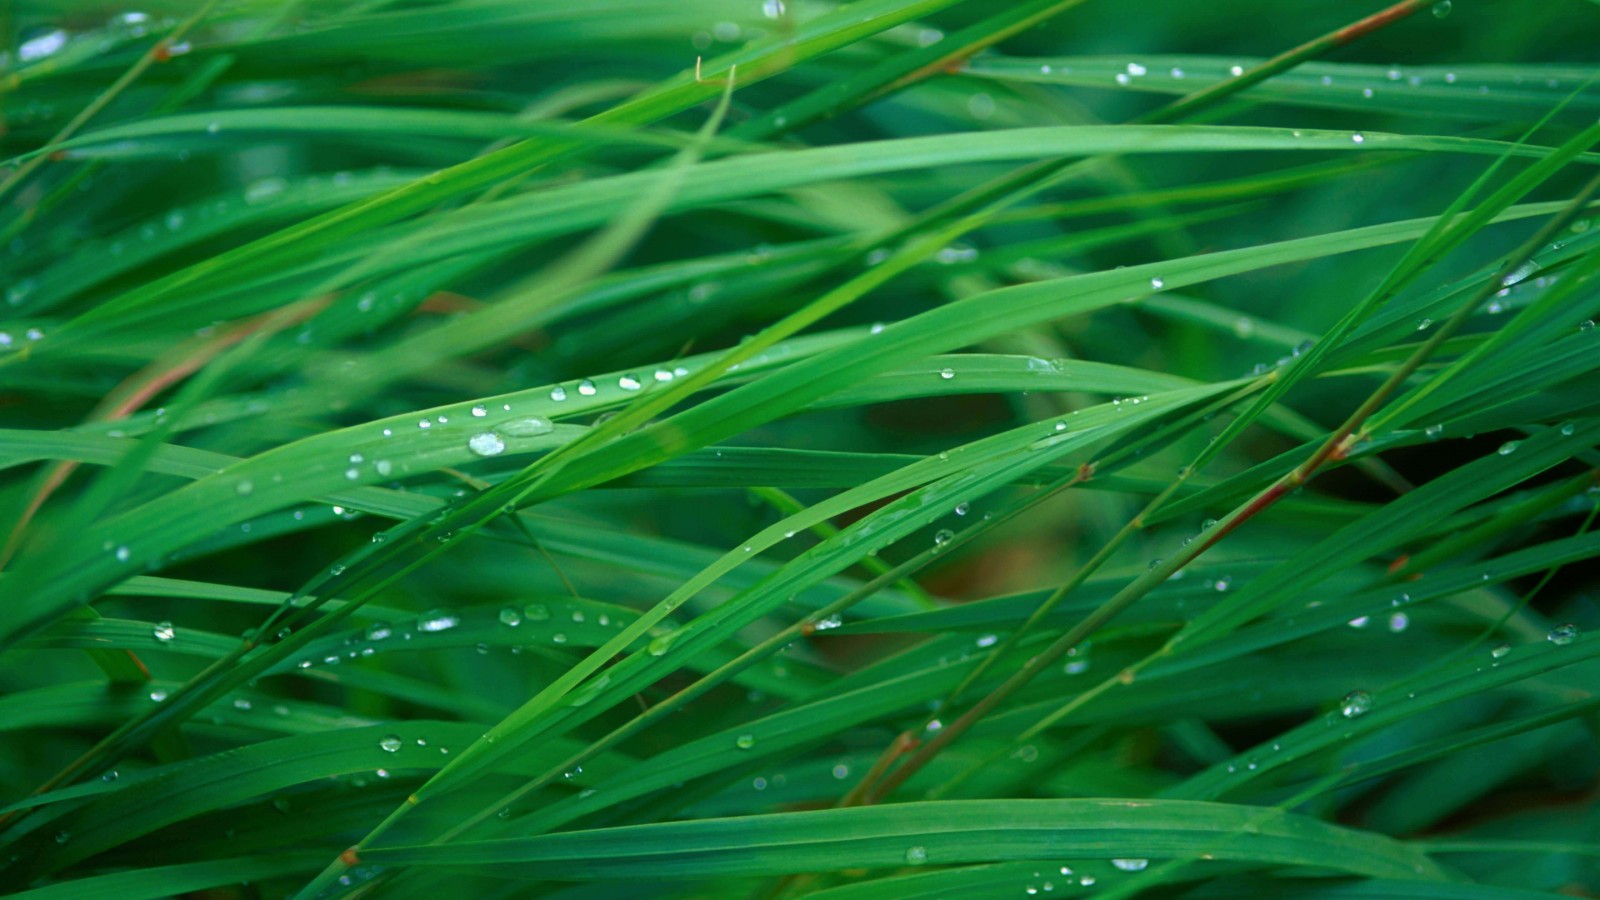 Green Blades Of Grass Wallpaper for Desktop 1600x900